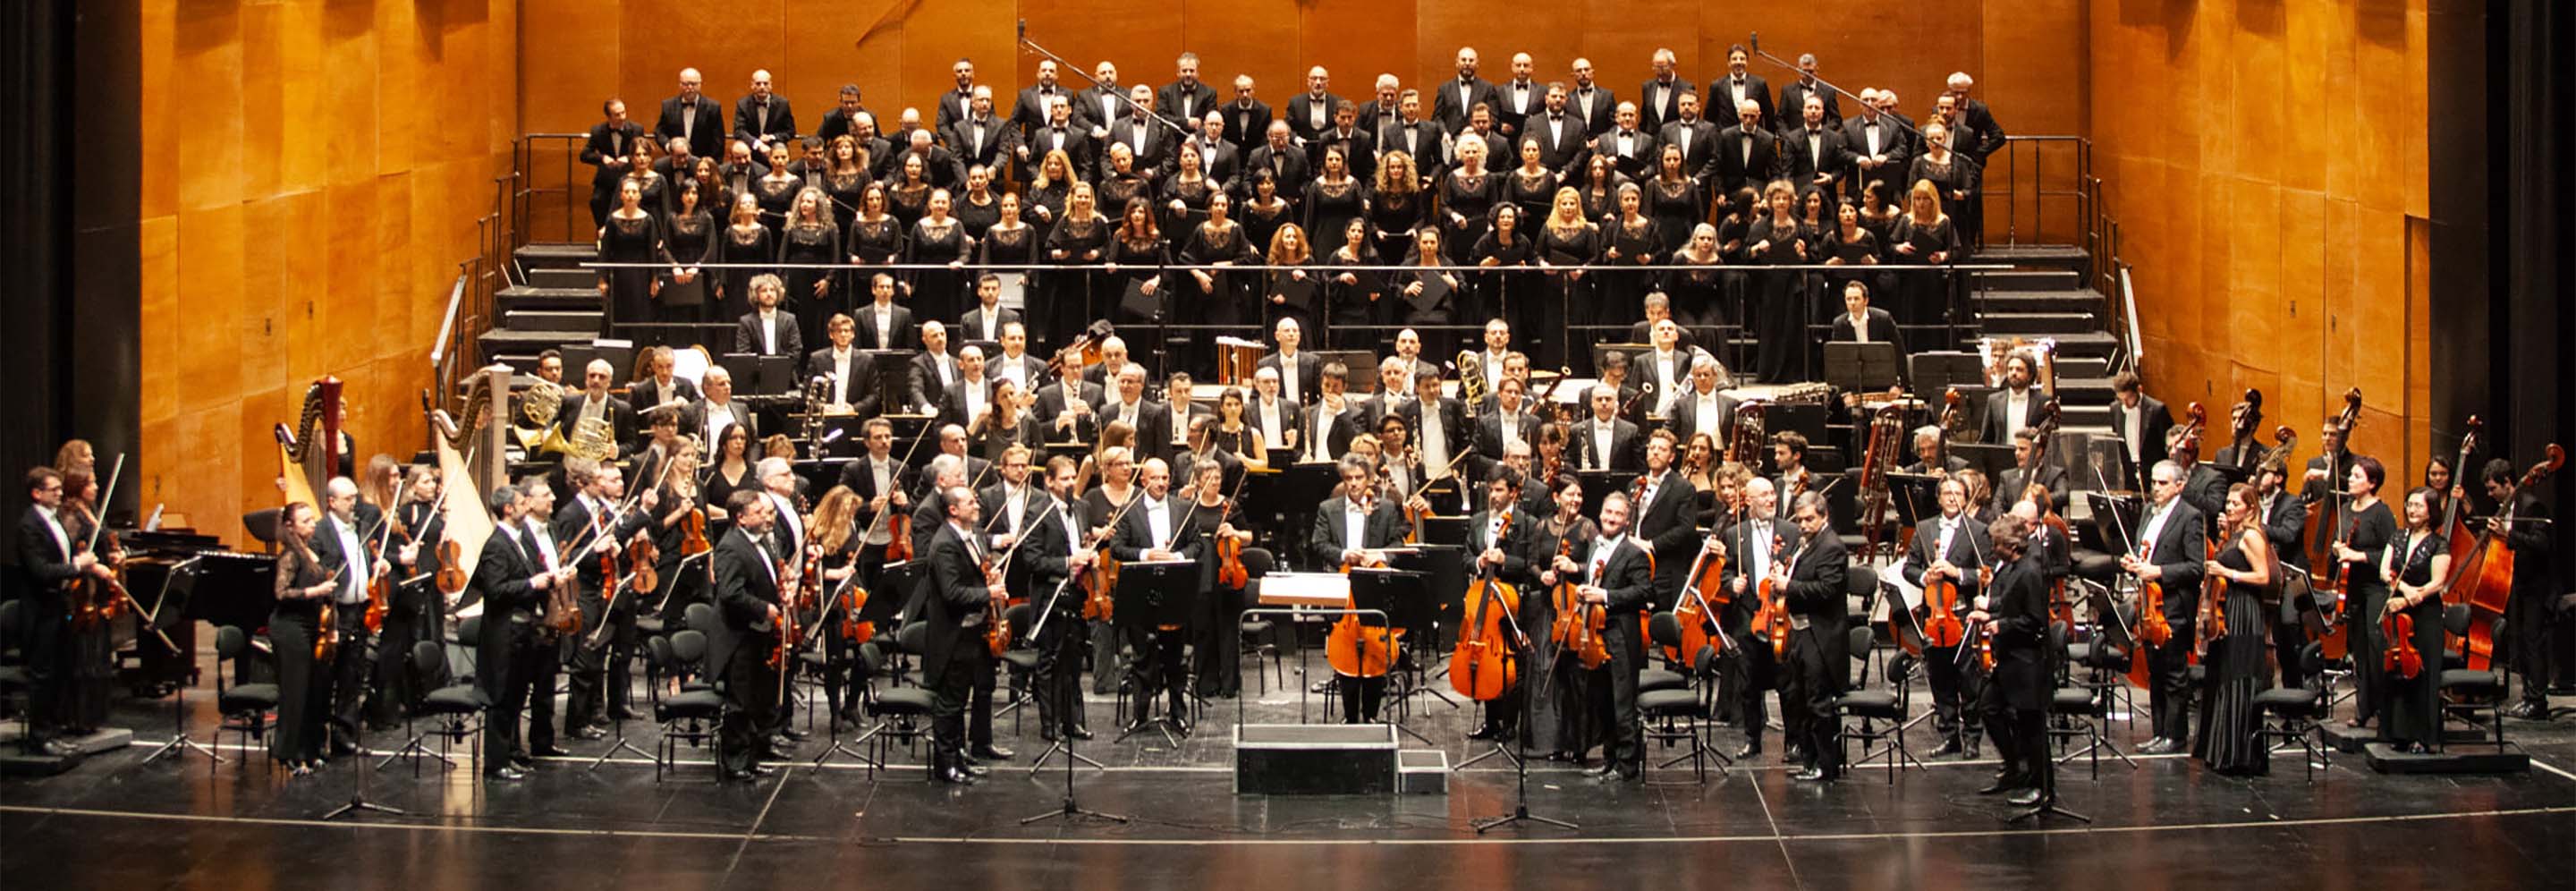 Orchestra e Coro del Teatro del Maggio Musicale Fiorentino